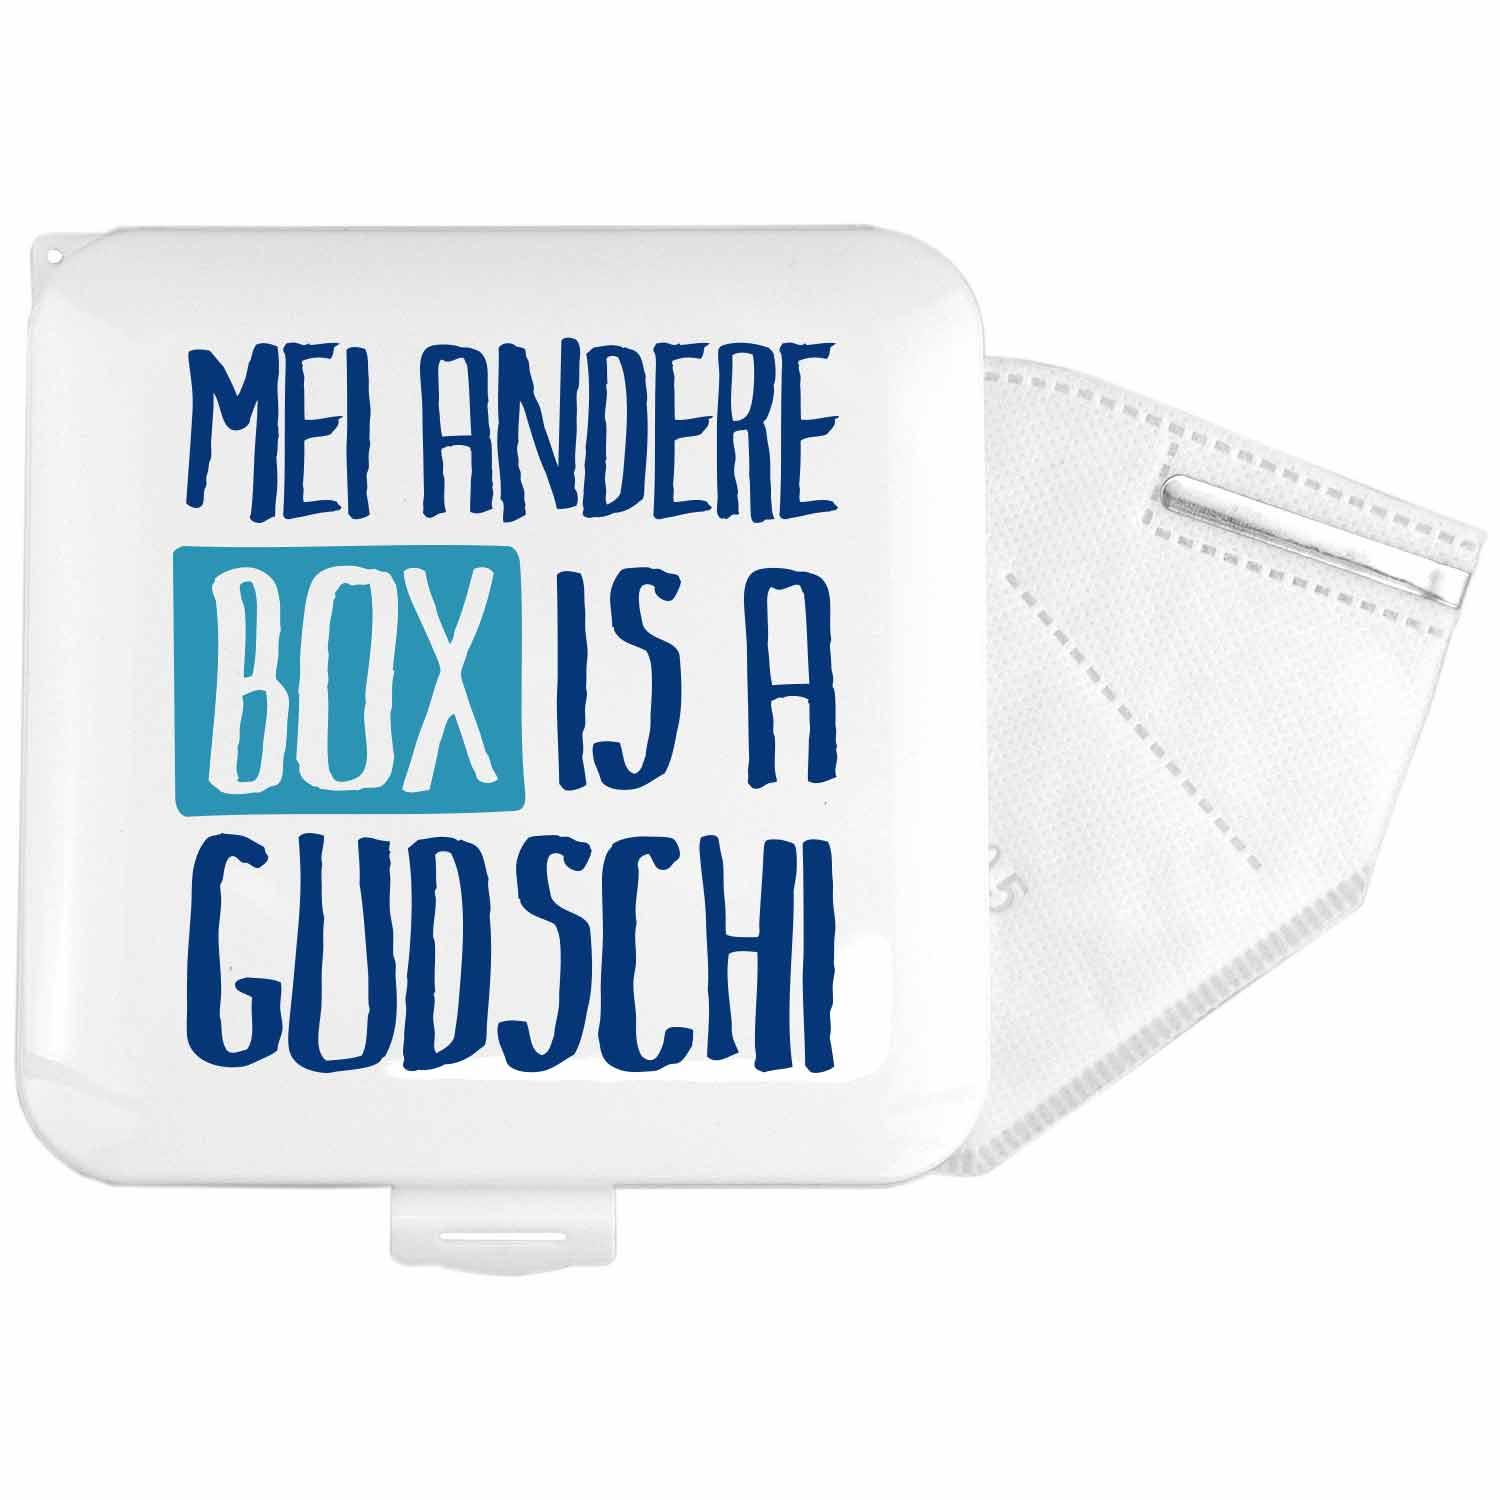 Maskenbox "Gudschi" - bavariashop - mei LebensGfui